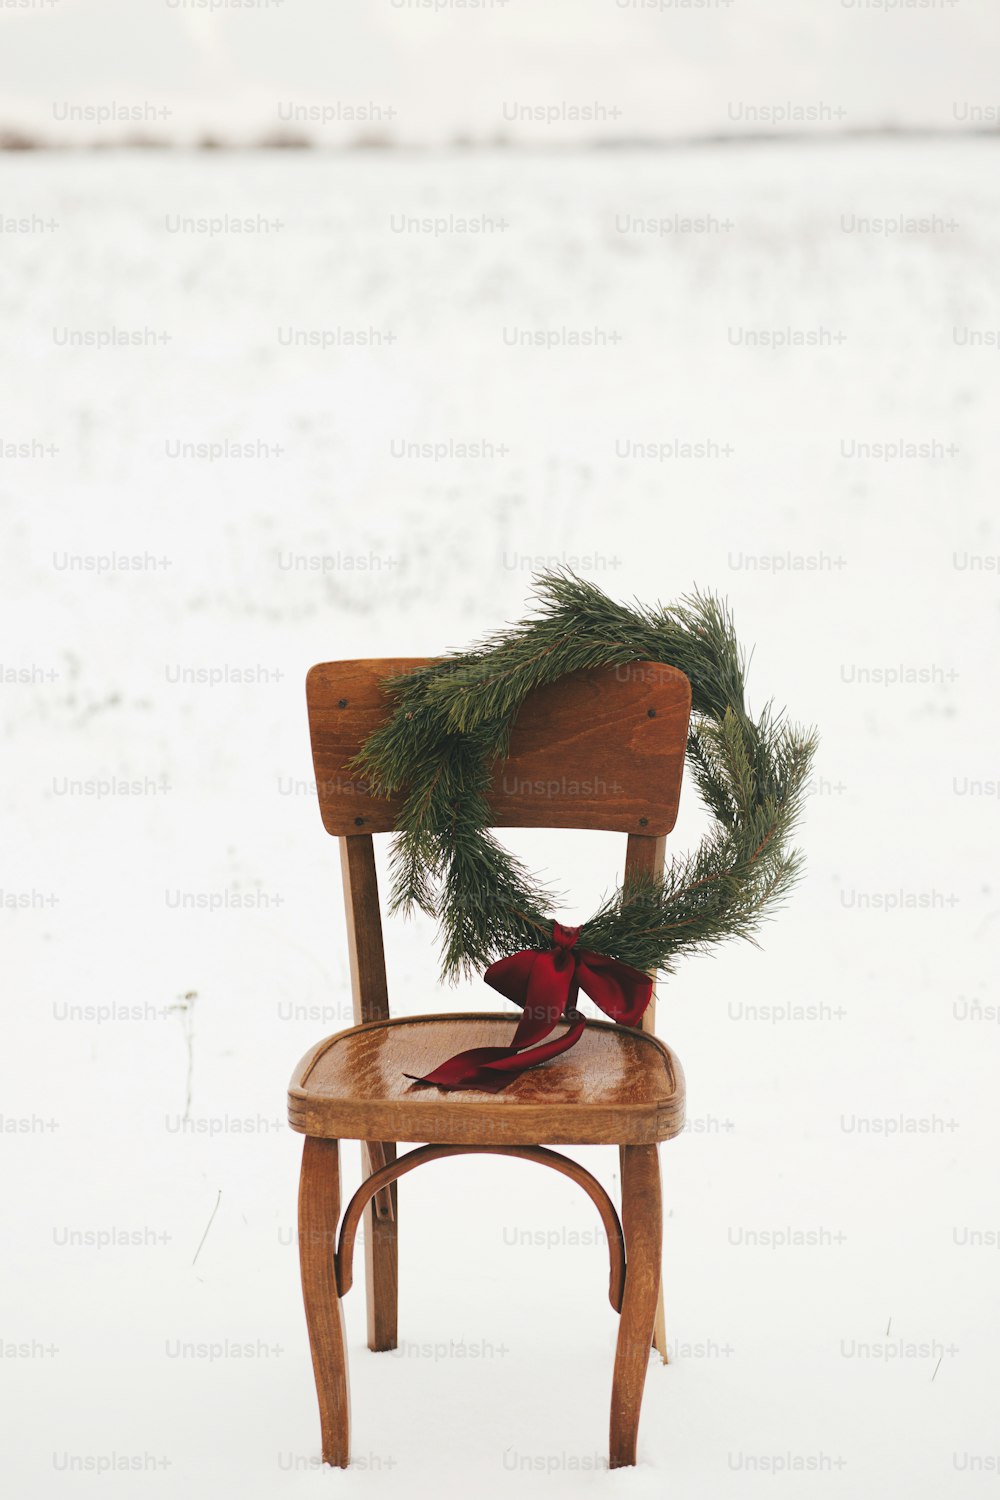 ¡Feliz navidad! Corona de Navidad en silla rústica en campo de invierno cubierto de nieve. Vacaciones de invierno en el campo. Espacio para texto. Elegante corona navideña con ramas de pino y lazo rojo colgando de una silla de madera